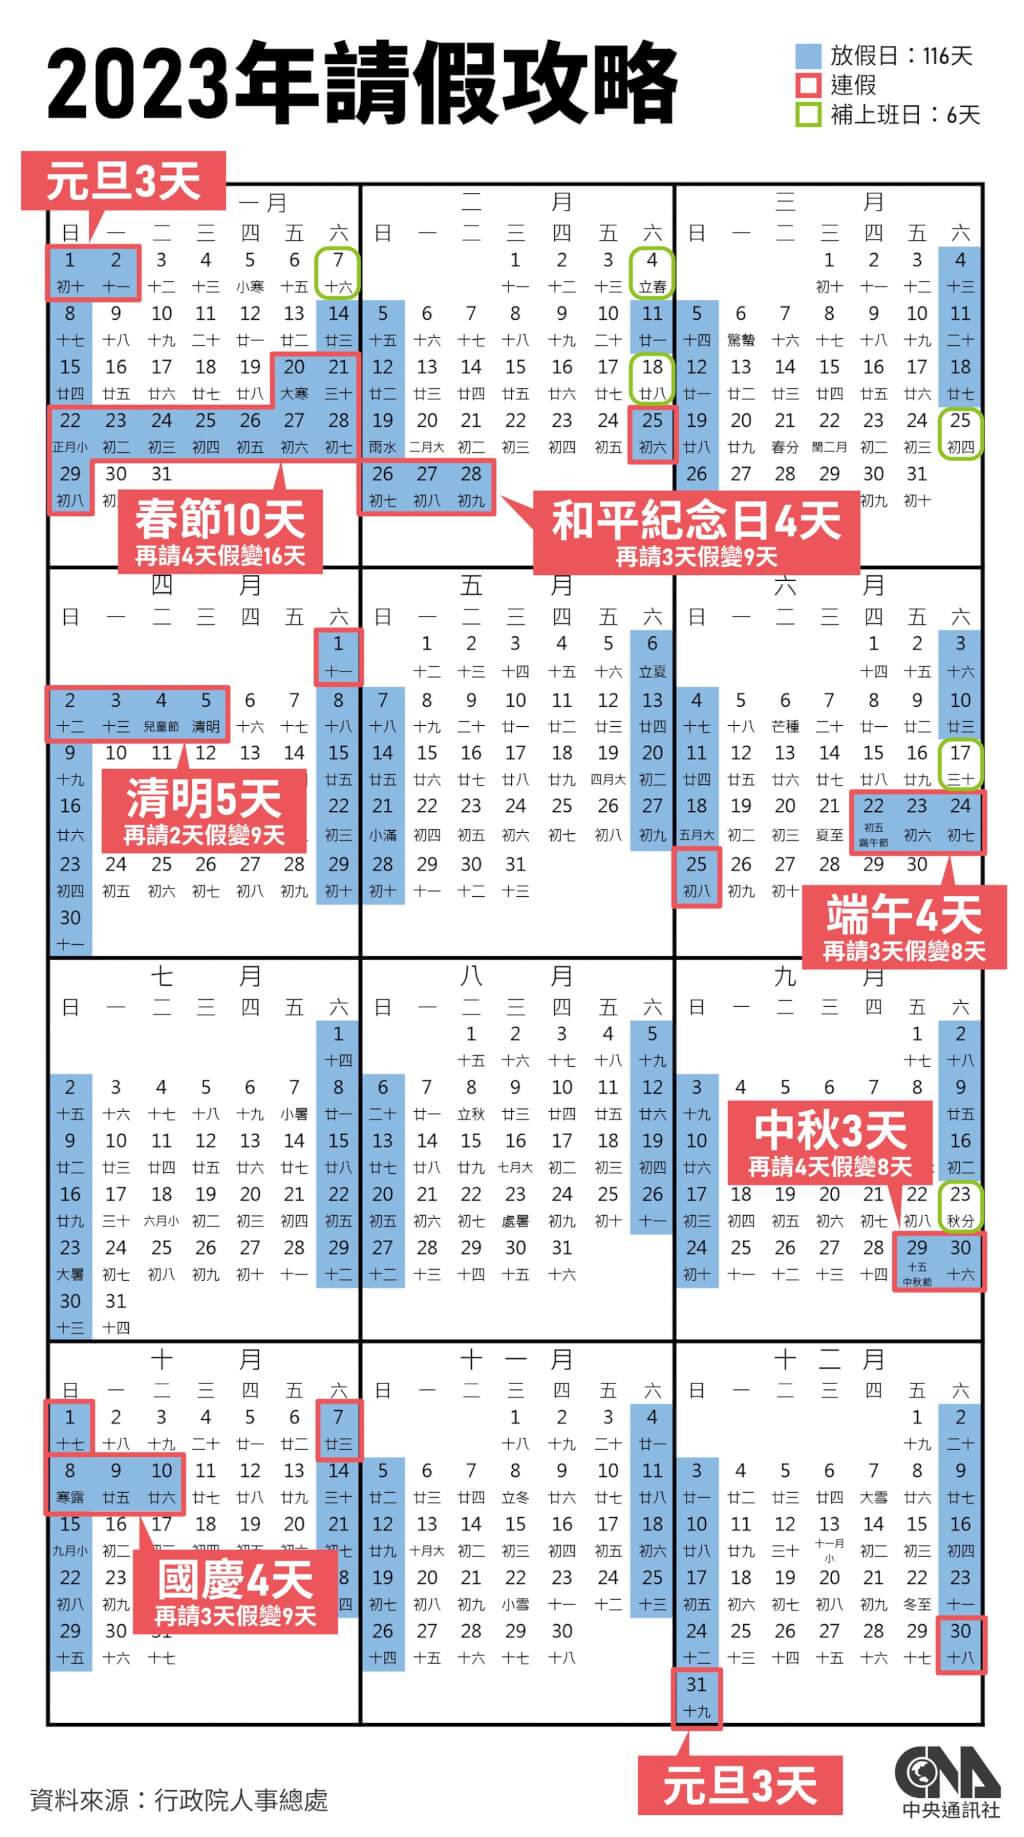 112年行事曆出爐 春節放10天清明連假5天 生活 中央社 CNA